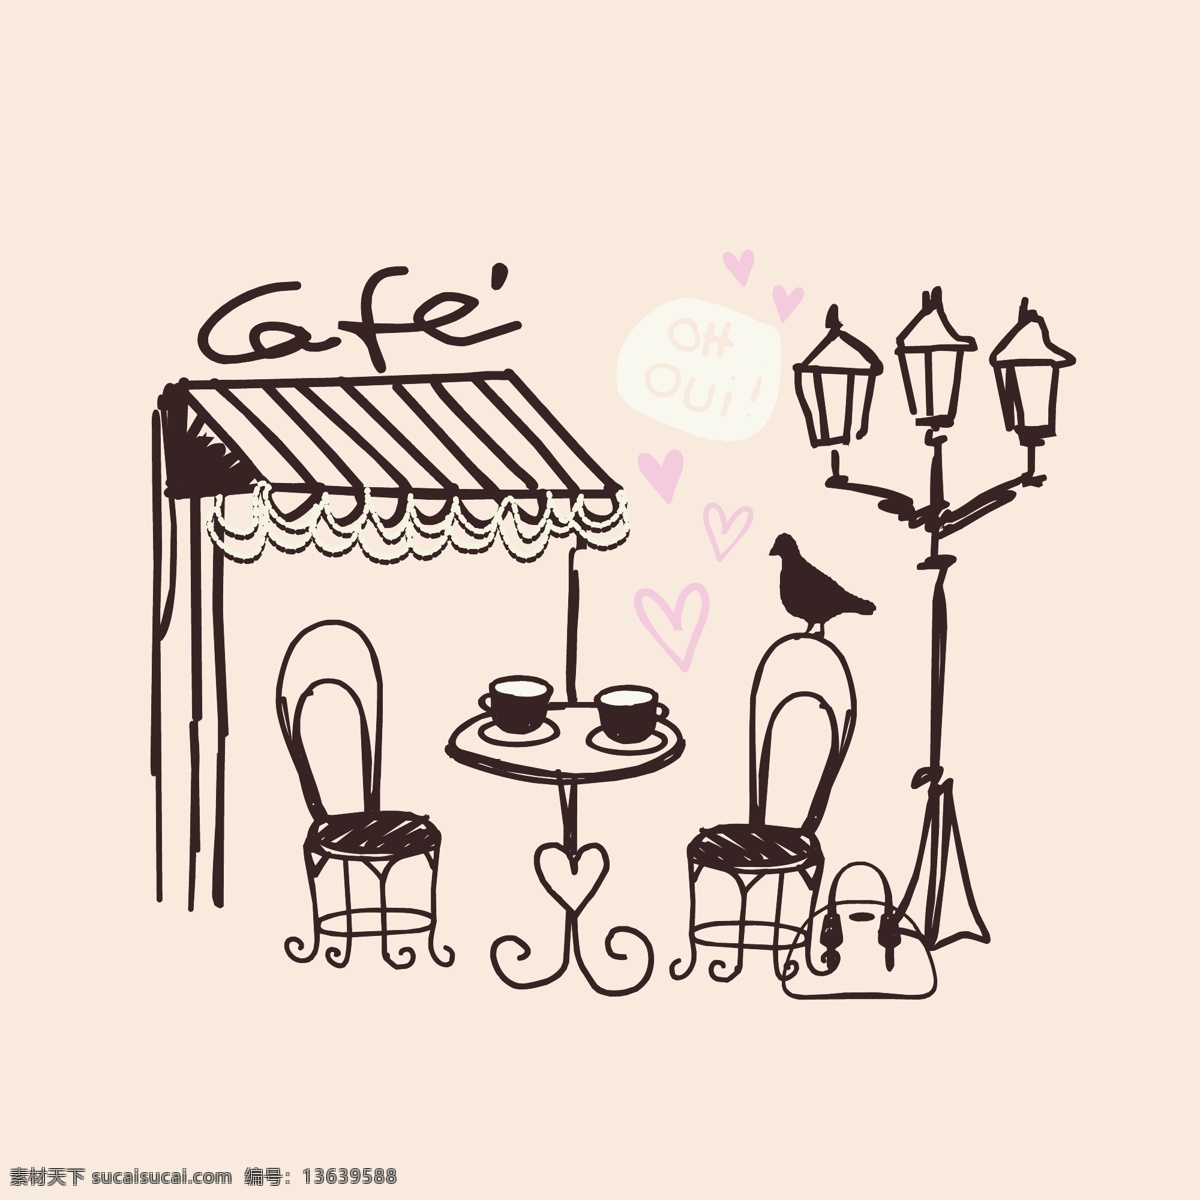 简单 咖啡厅 简 笔画 英式风格 简笔画 简洁 简单基调 摩登女孩子 文化艺术 绘画书法